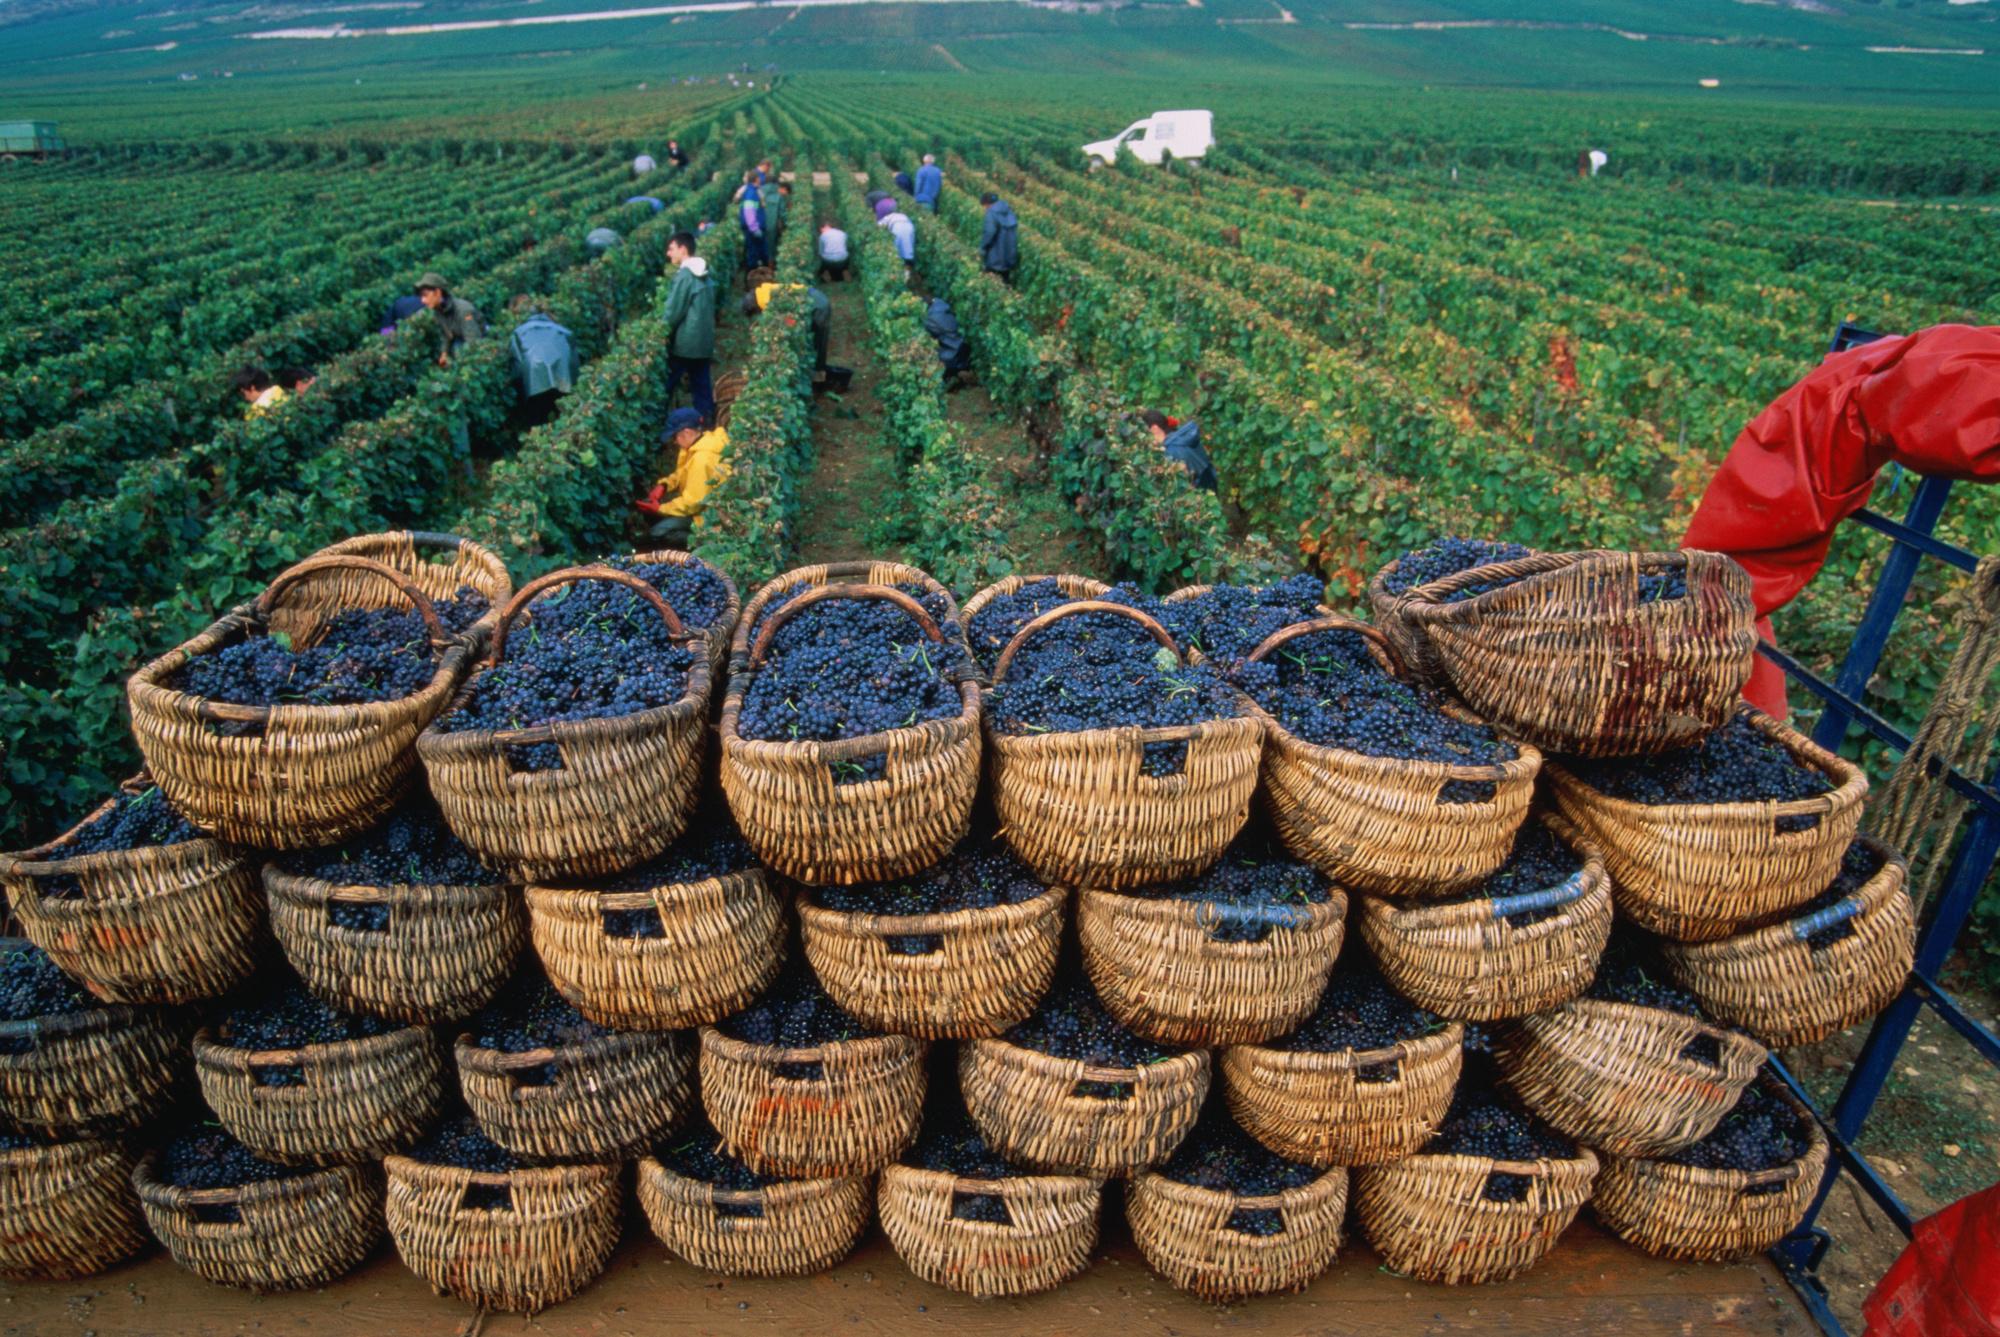 Comment les viticulteurs français s'adaptent au changement climatique